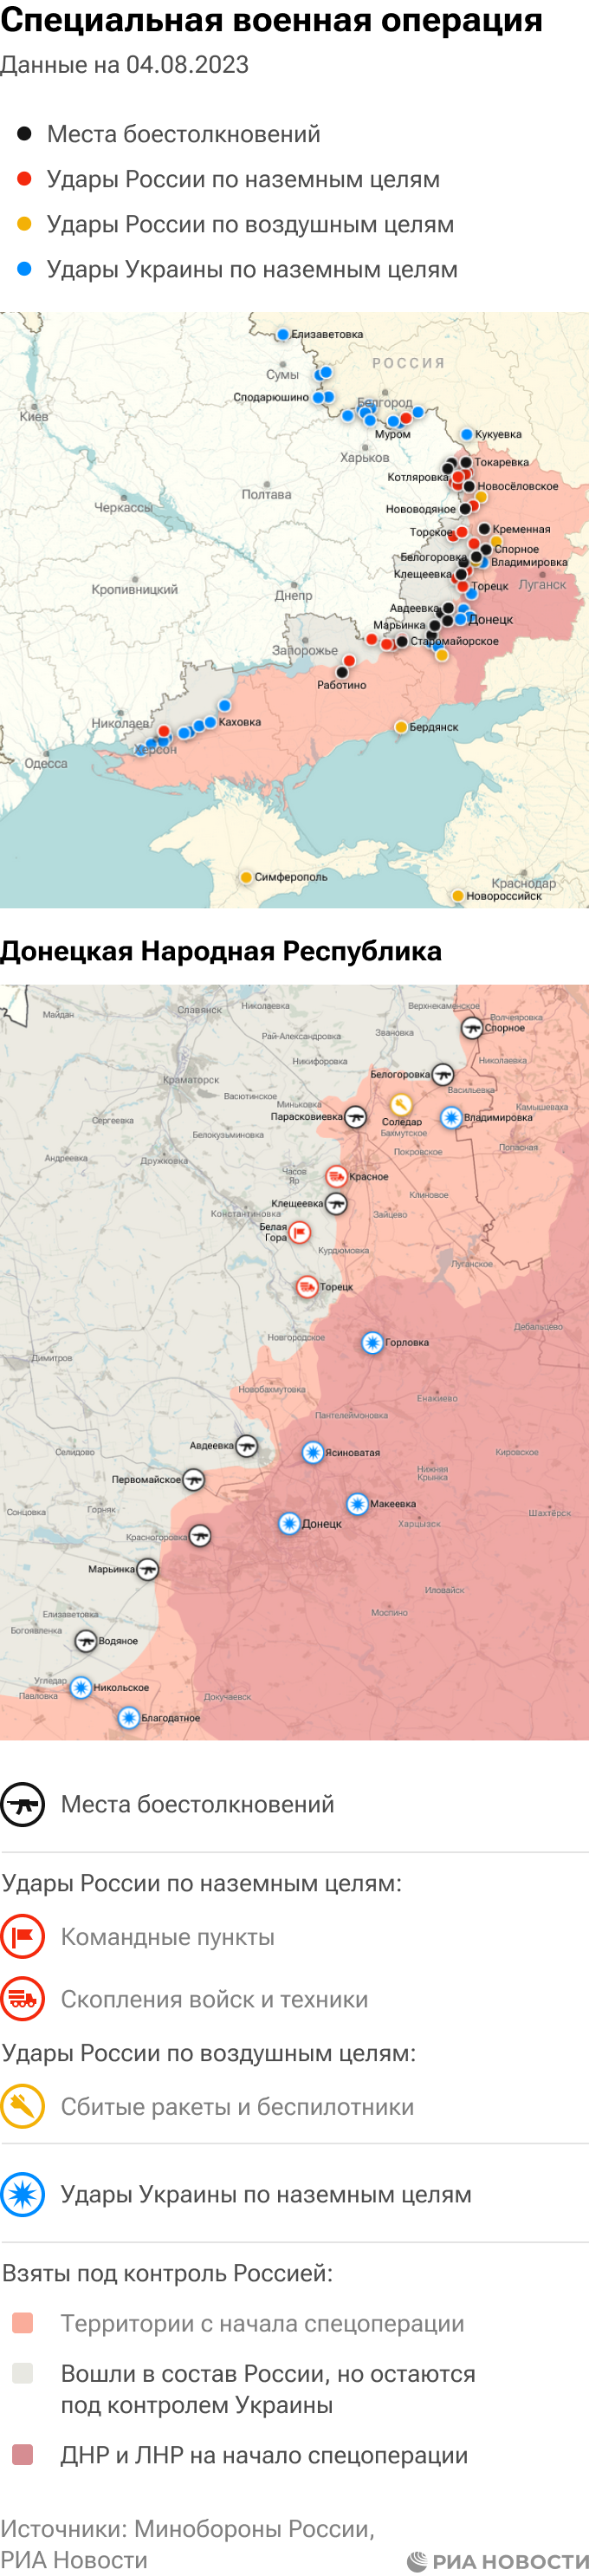 Последние новости по украине карта боевых действий на сейчас